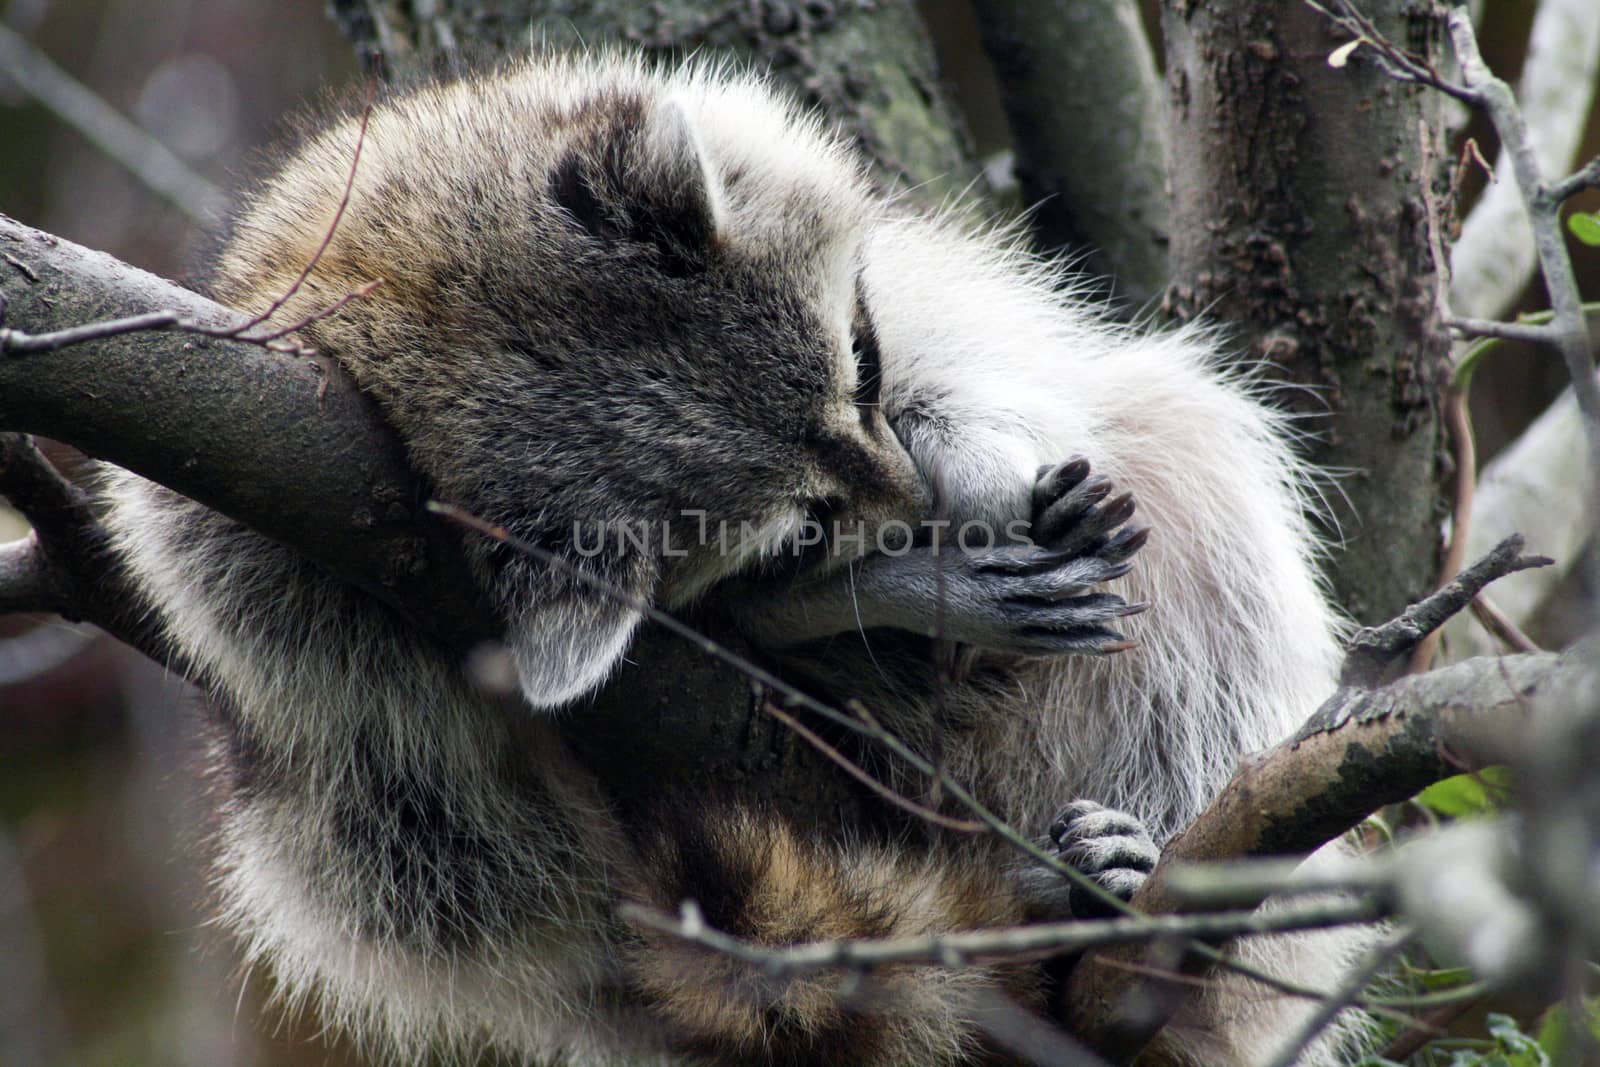 Closeup of raccoon sleeping in a tree